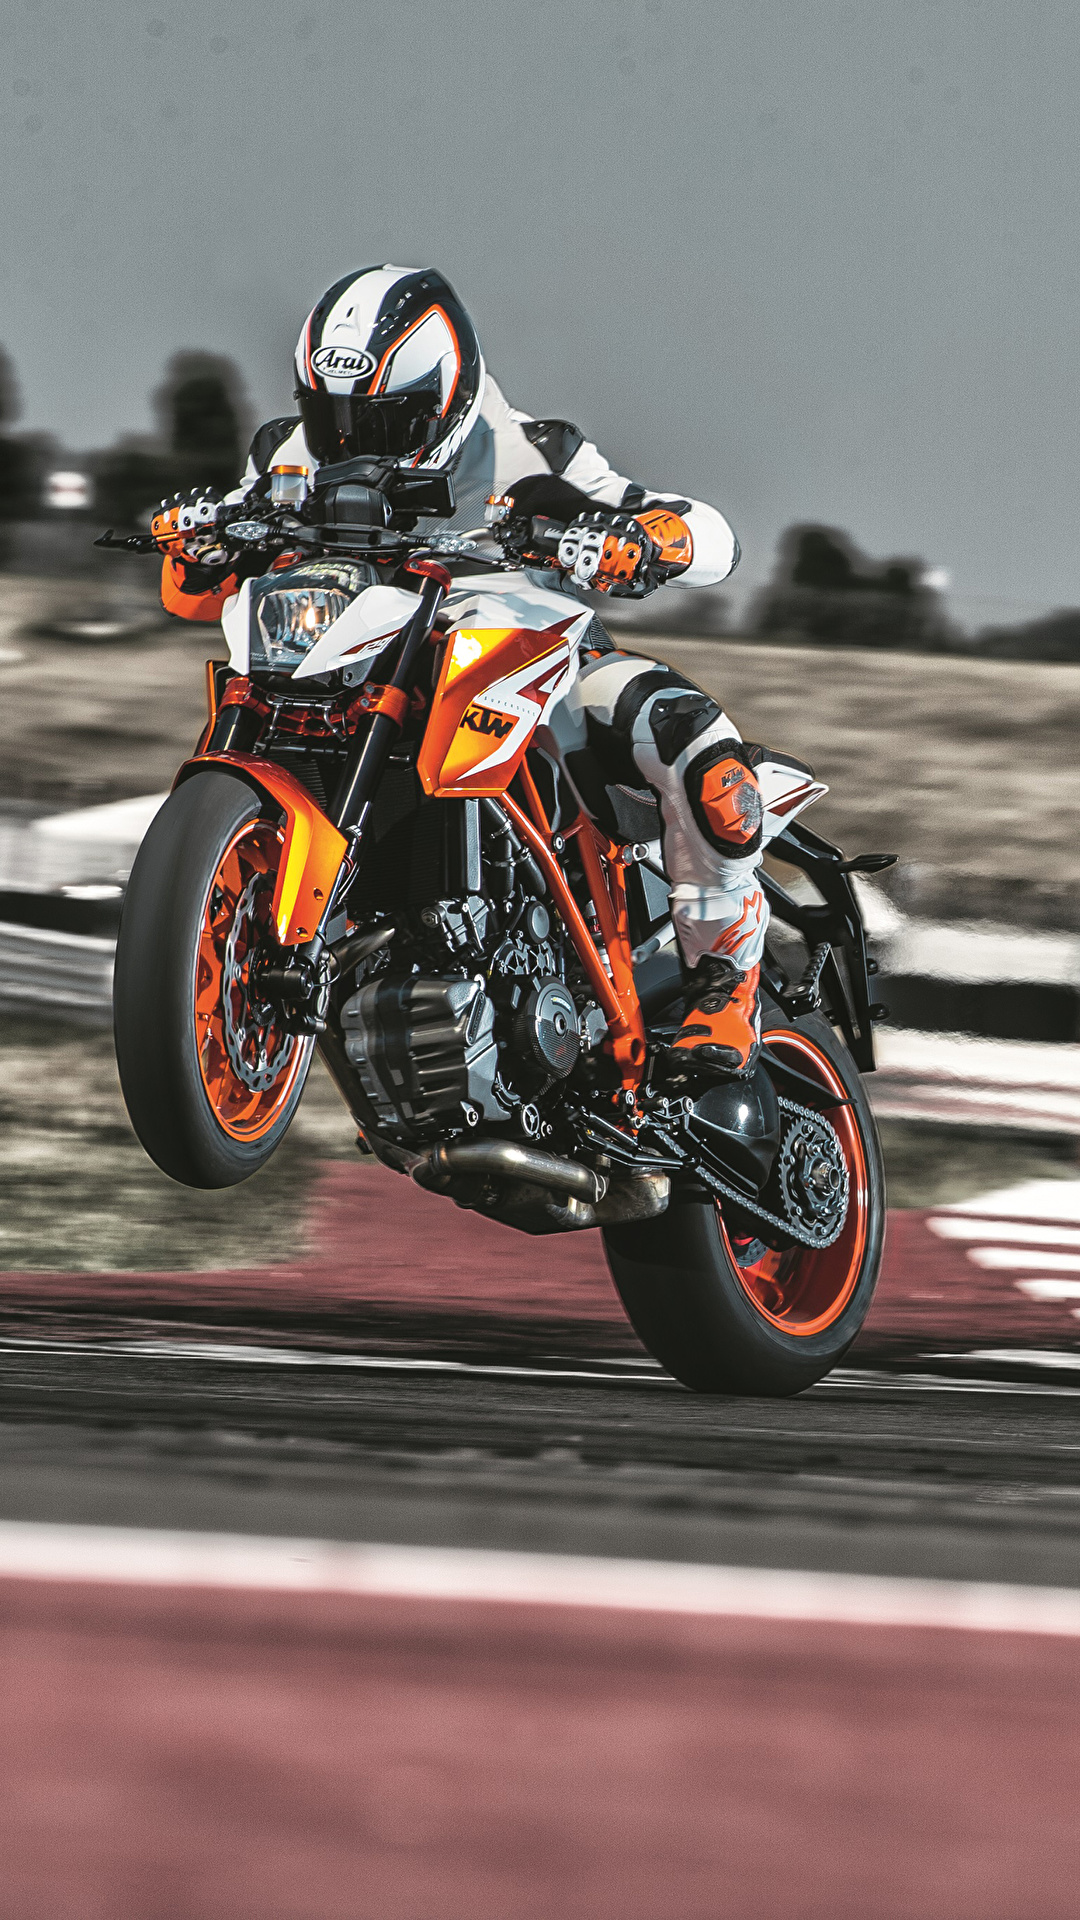 壁紙 1080x19 Ktmオートバイ 16 1290 Super Duke R Special Edition モーターサイクリスト ヘルメット オートバイ ダウンロード 写真